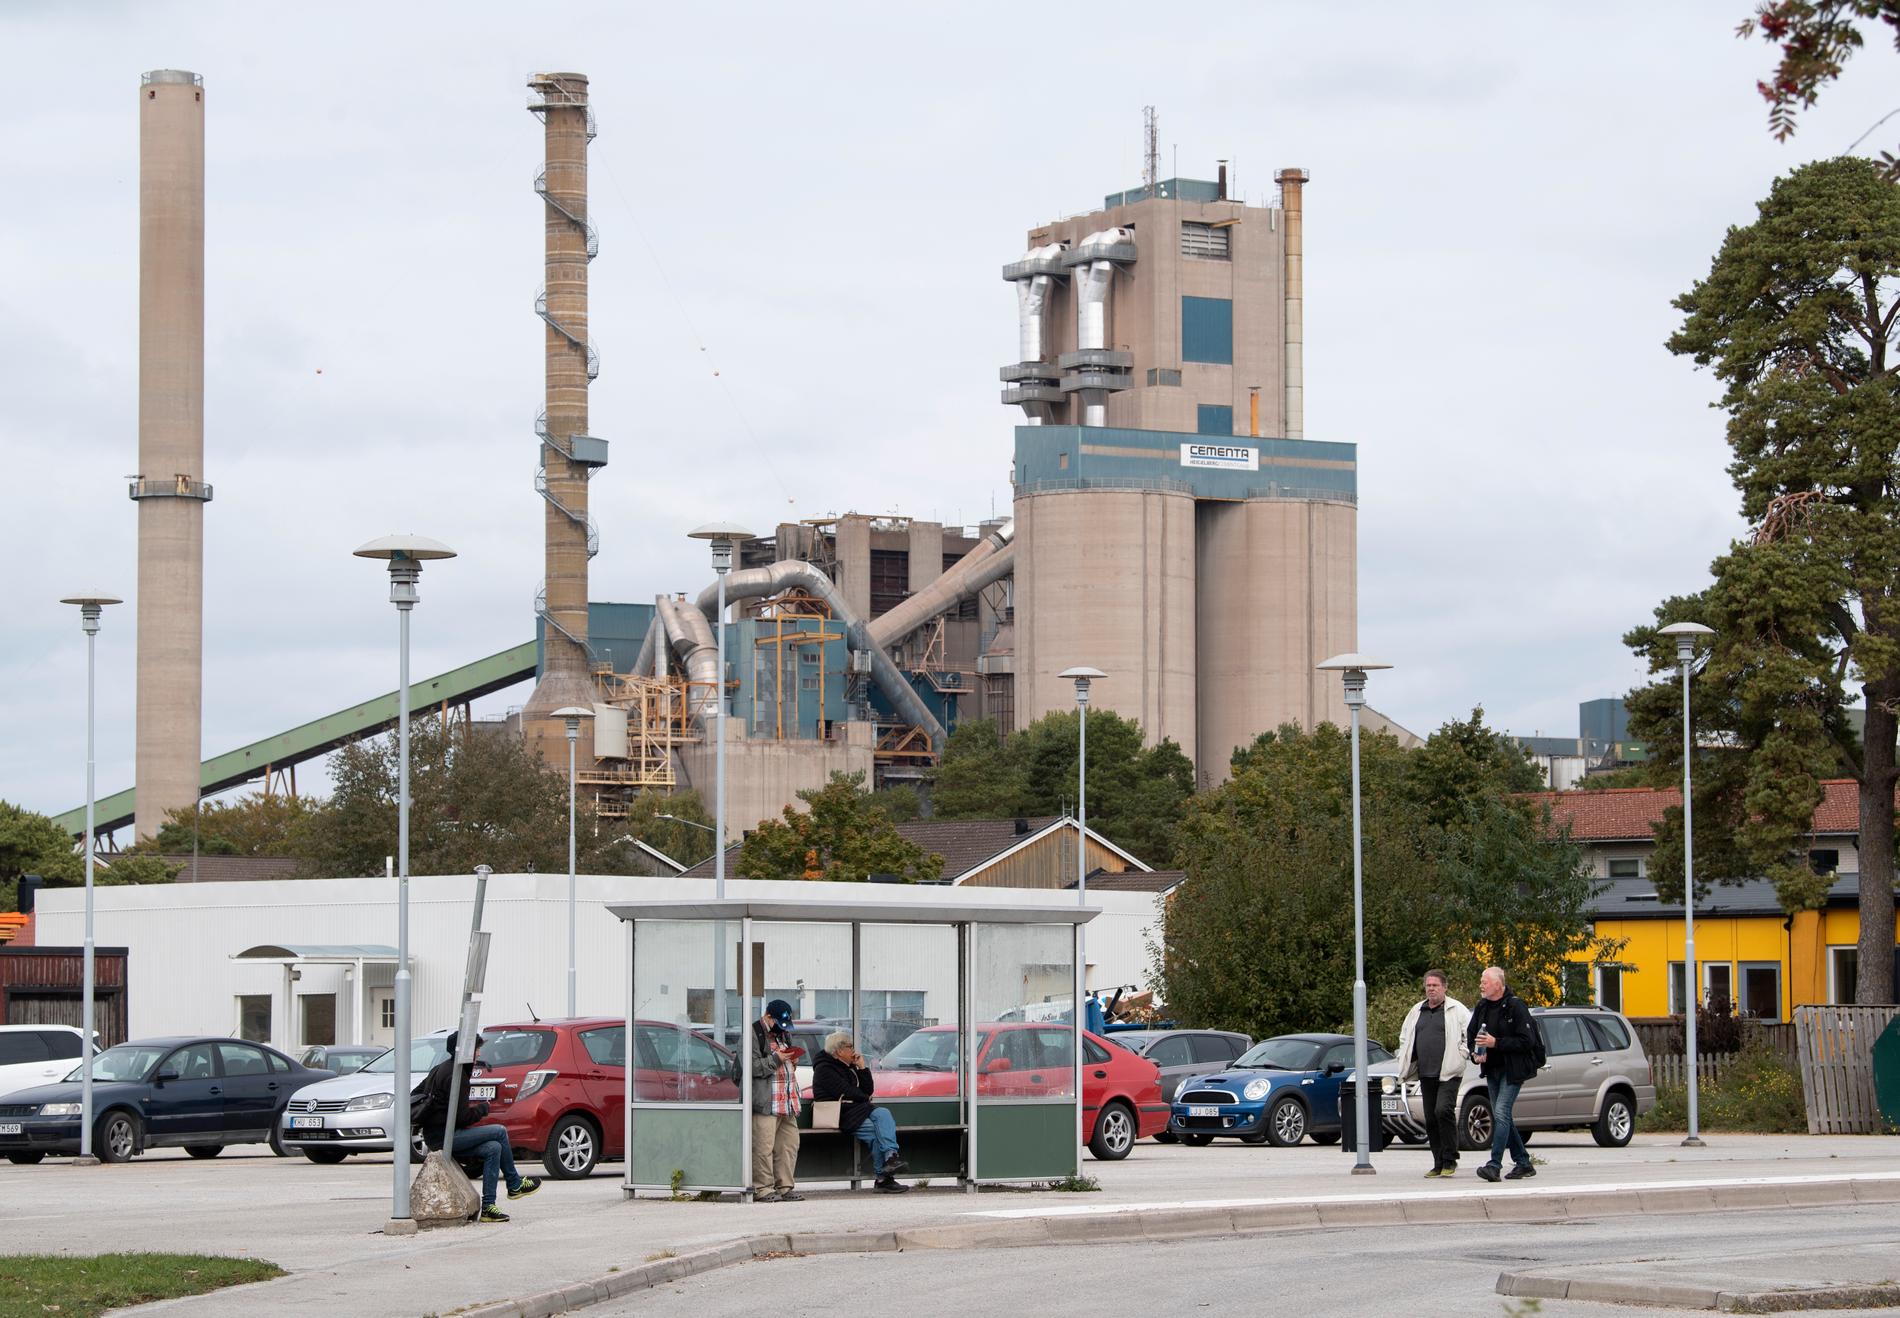 Cementas cementfabrik i Slite på Gotland ska bli klimatpositiv till 2030, enligt planerna som företaget nu går vidare med. Arkivbild.